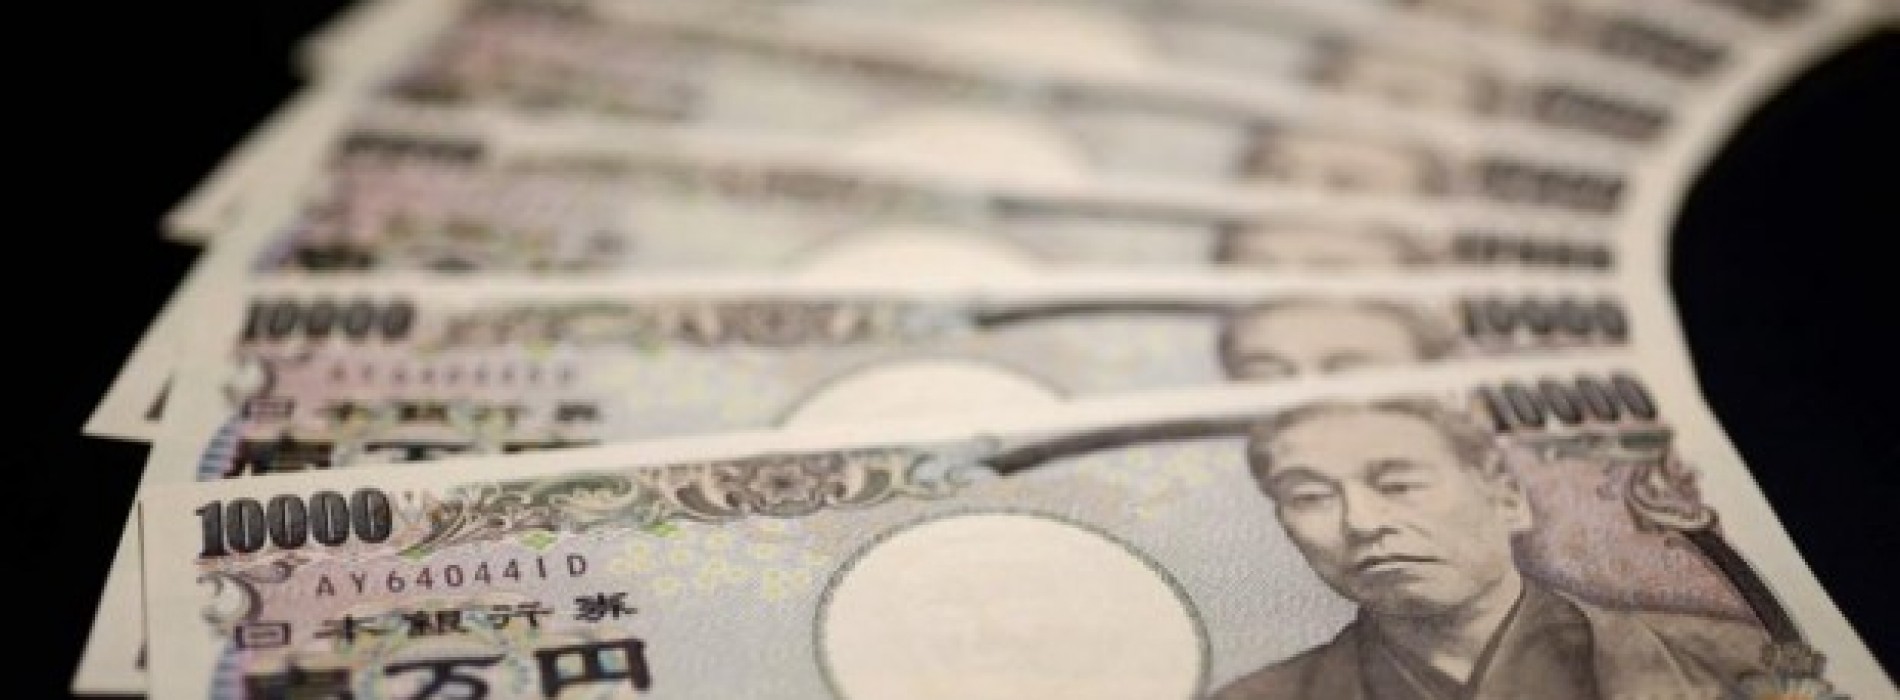 Poranny komentarz walutowy – słabszy jen i mocniejszy dolar australijski